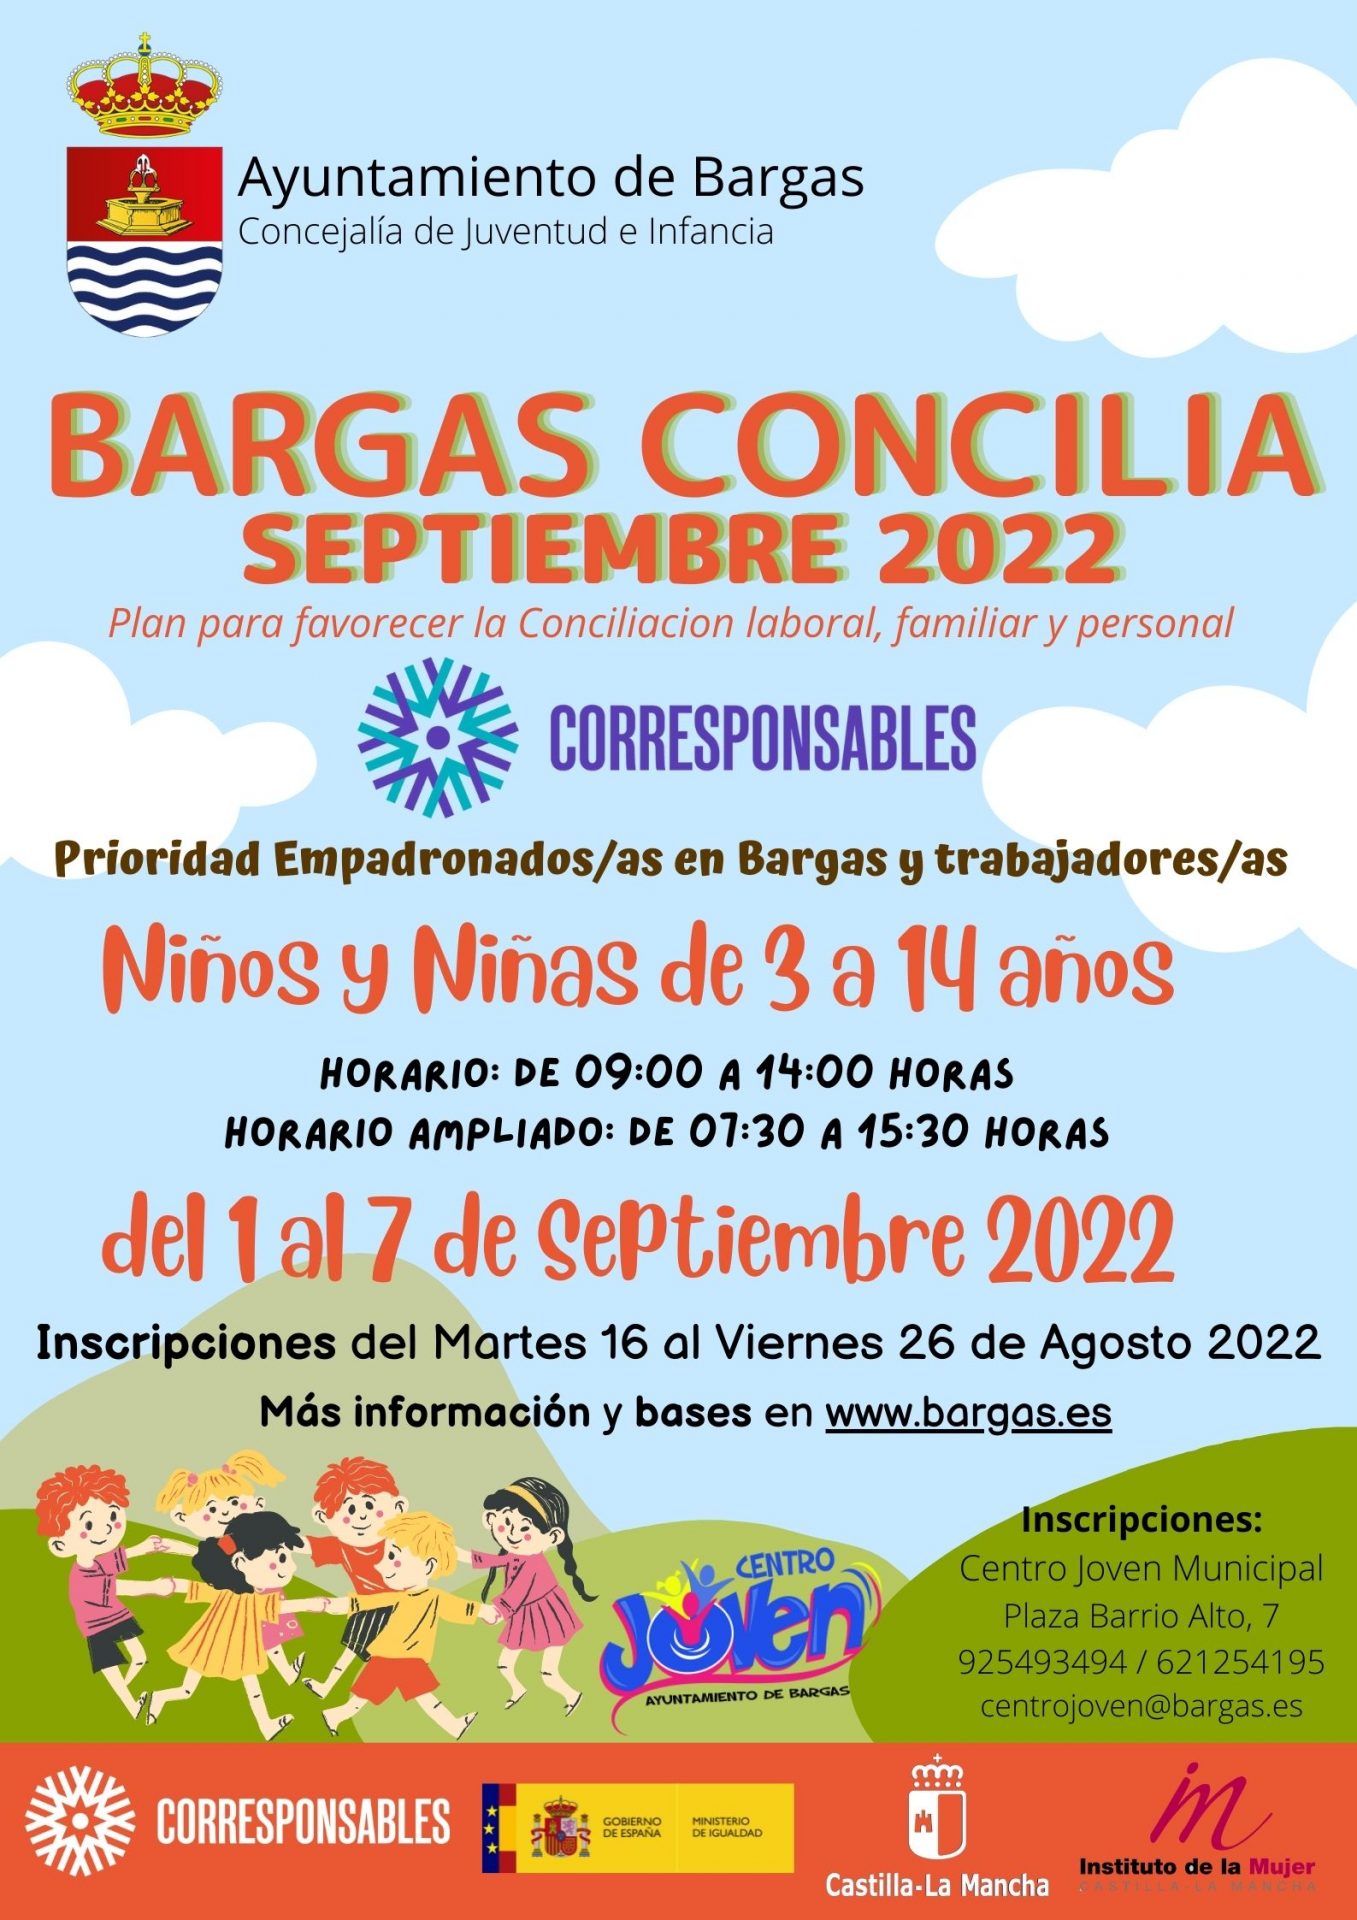 Bargas Concilia – Septiembre 2022